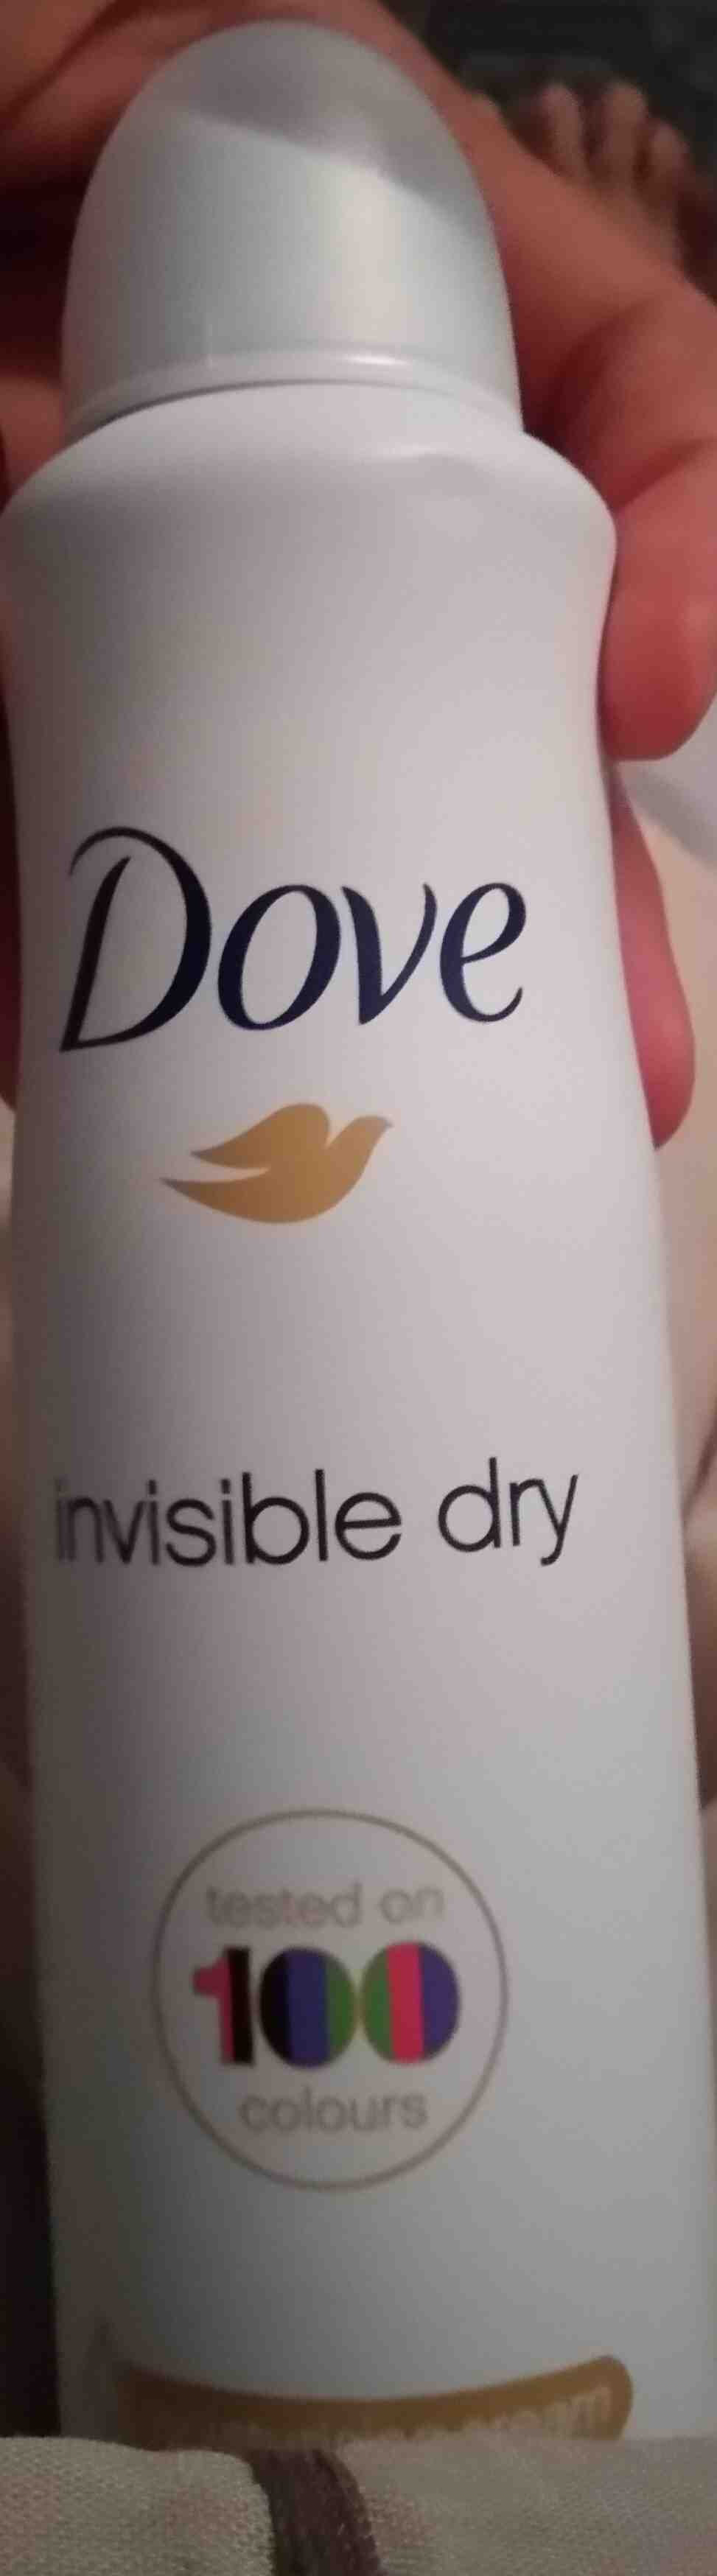 Invisible Dry - Ingredients - en